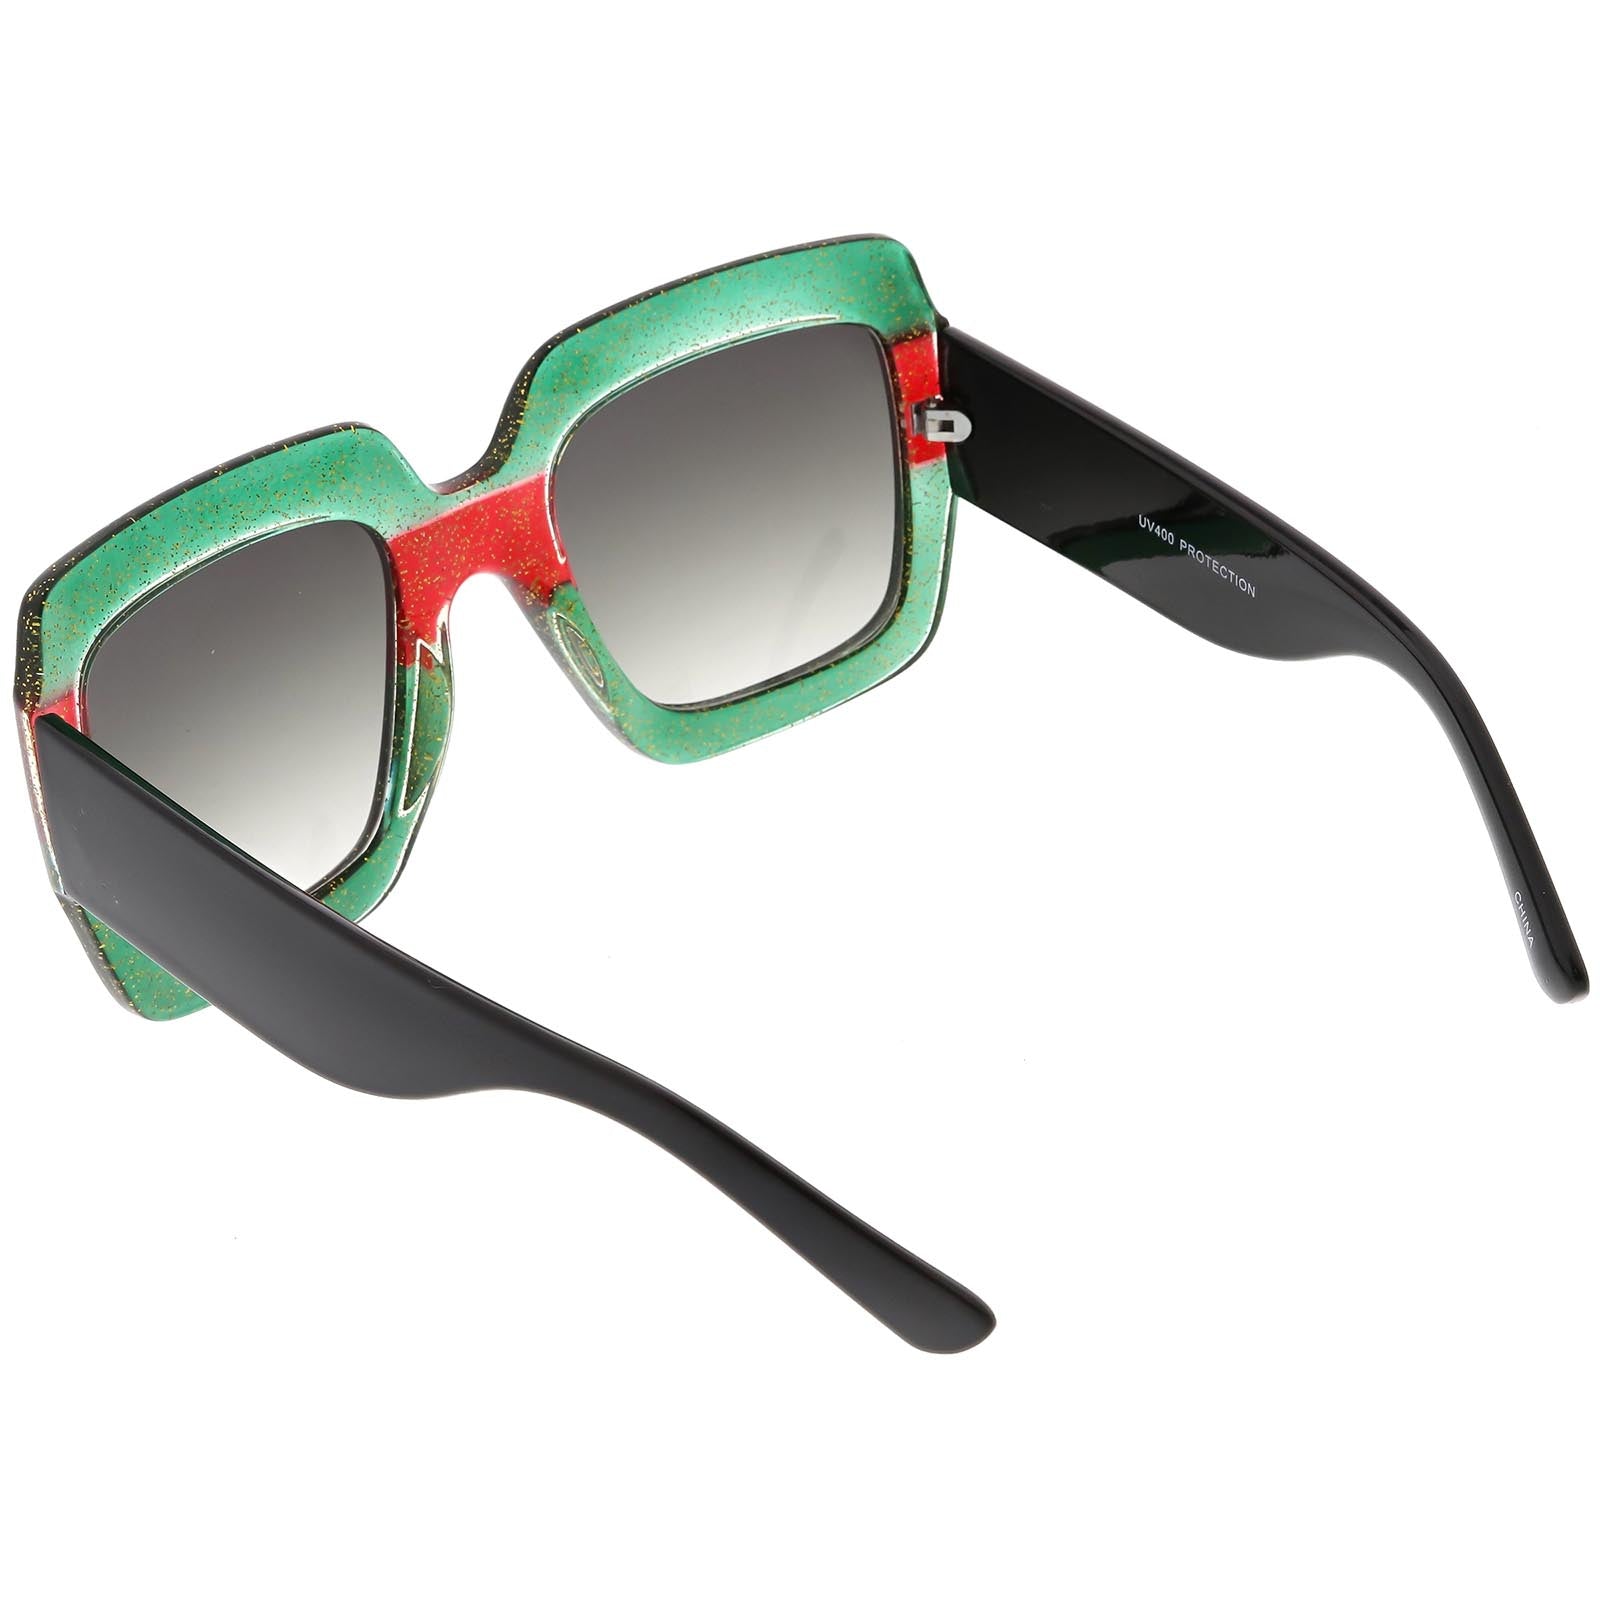 GUCCI AUTHENTIC 0328 Ivory Rainbow Glitter Stripe Square Sunglasses GG0328S  004